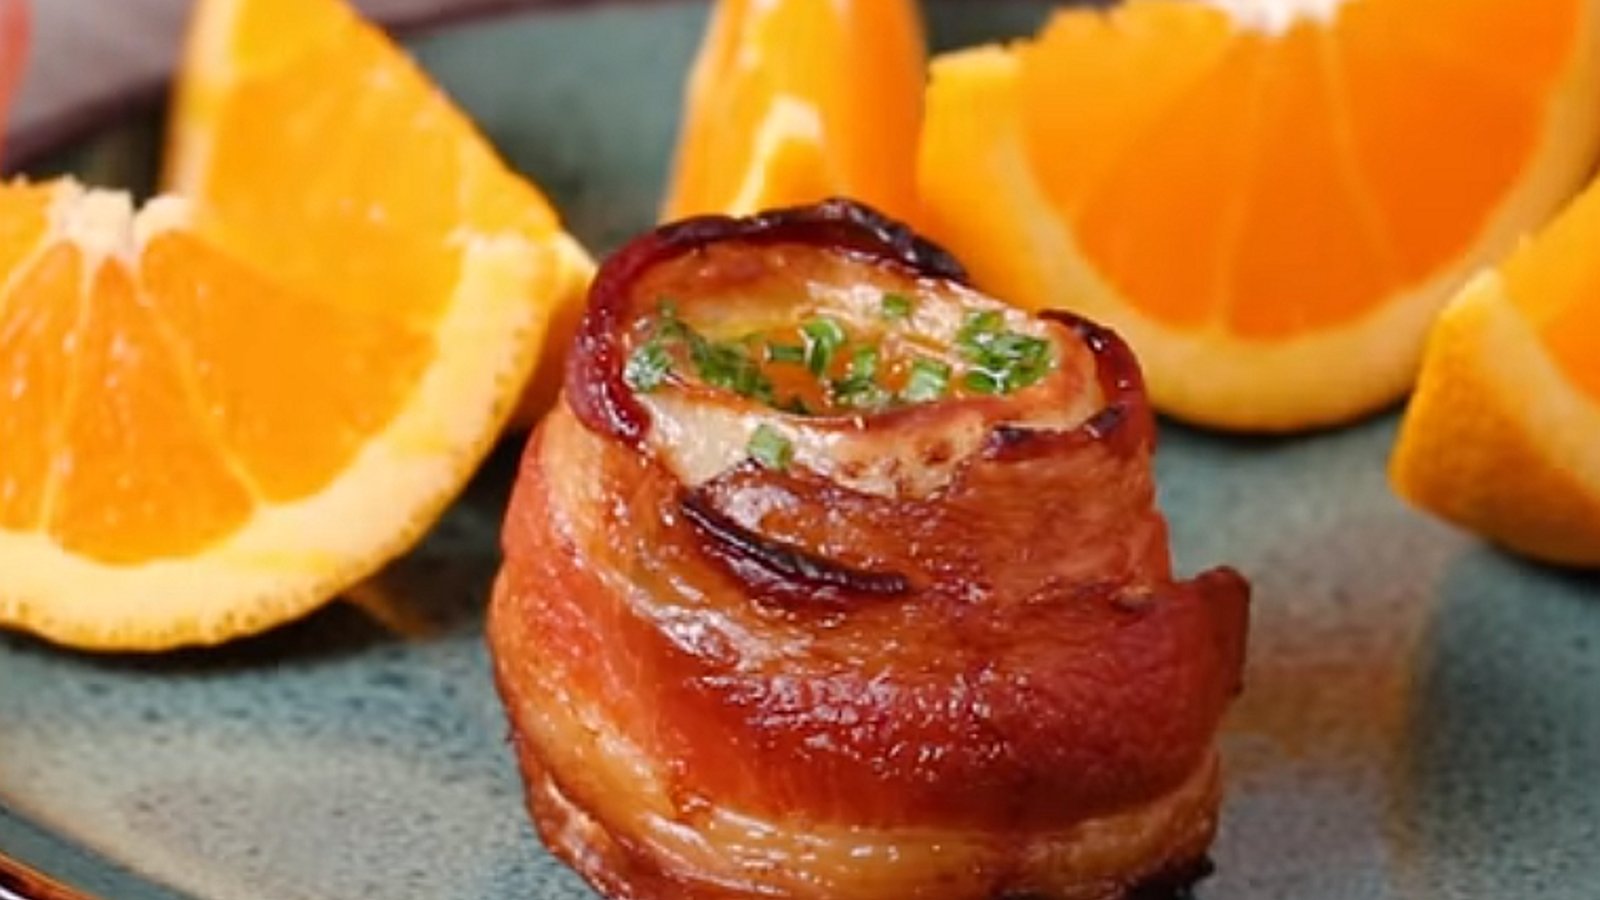 Pommes de terre fondantes enroulées de bacon: un incontournable pour le brunch